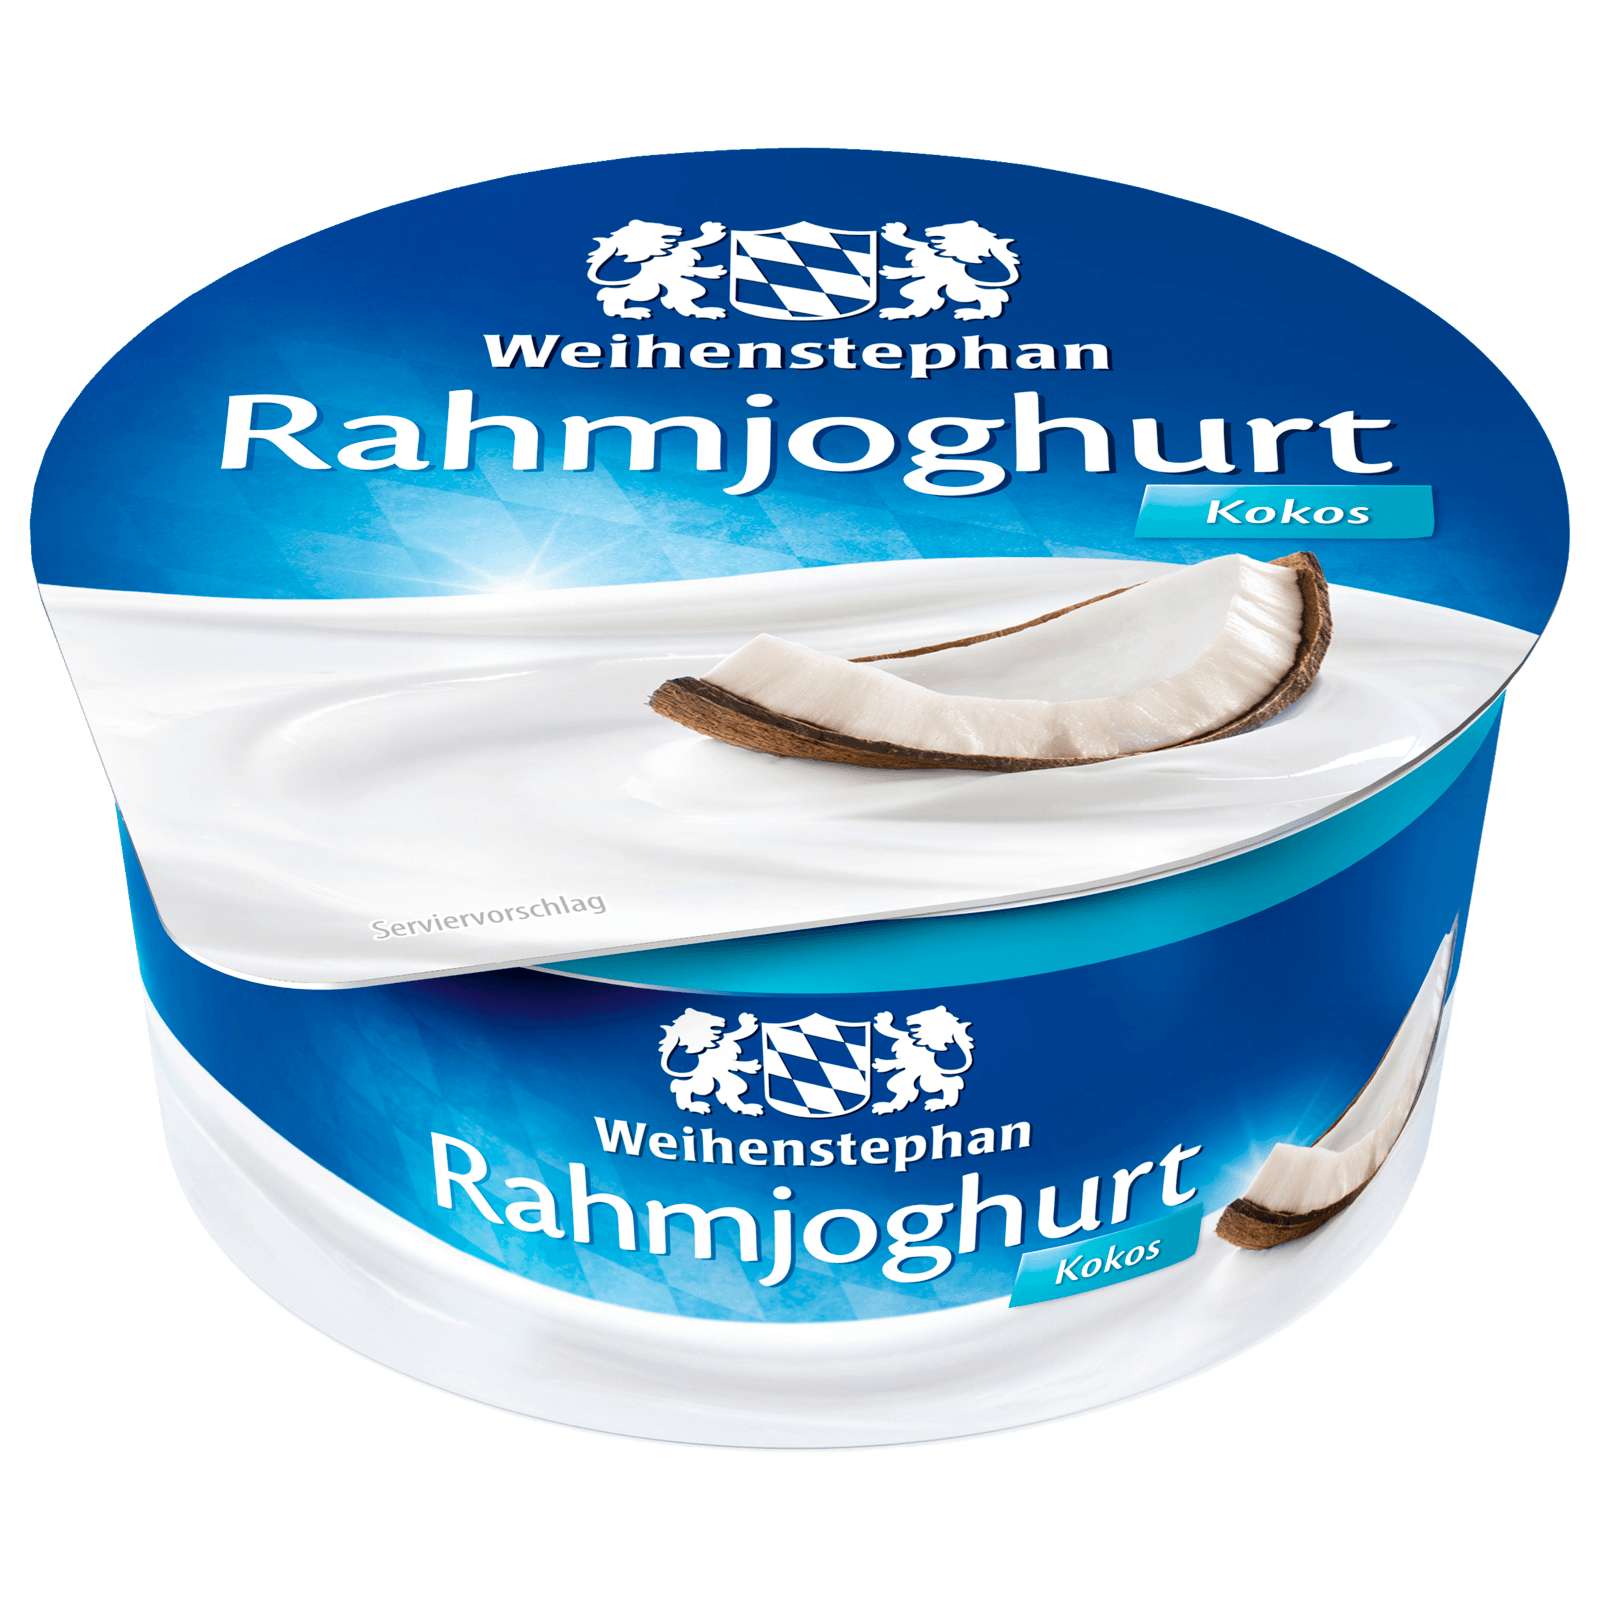 Weihenstephan Rahmjoghurt Kokos 150g  für 0.89 EUR